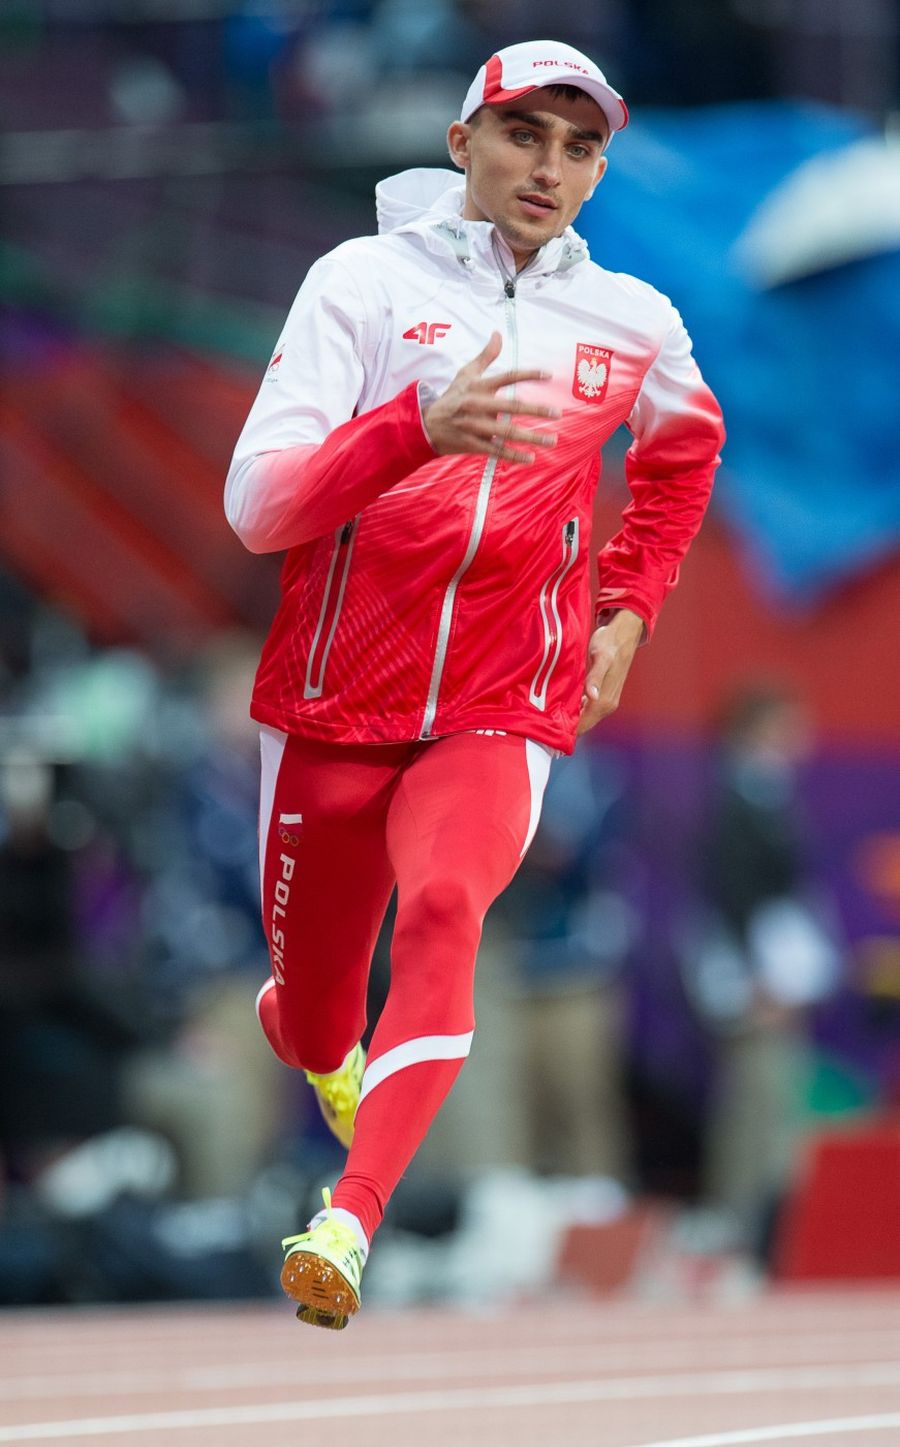 Adam Kszczot wicemistrzem świata w biegu na 800 metrów